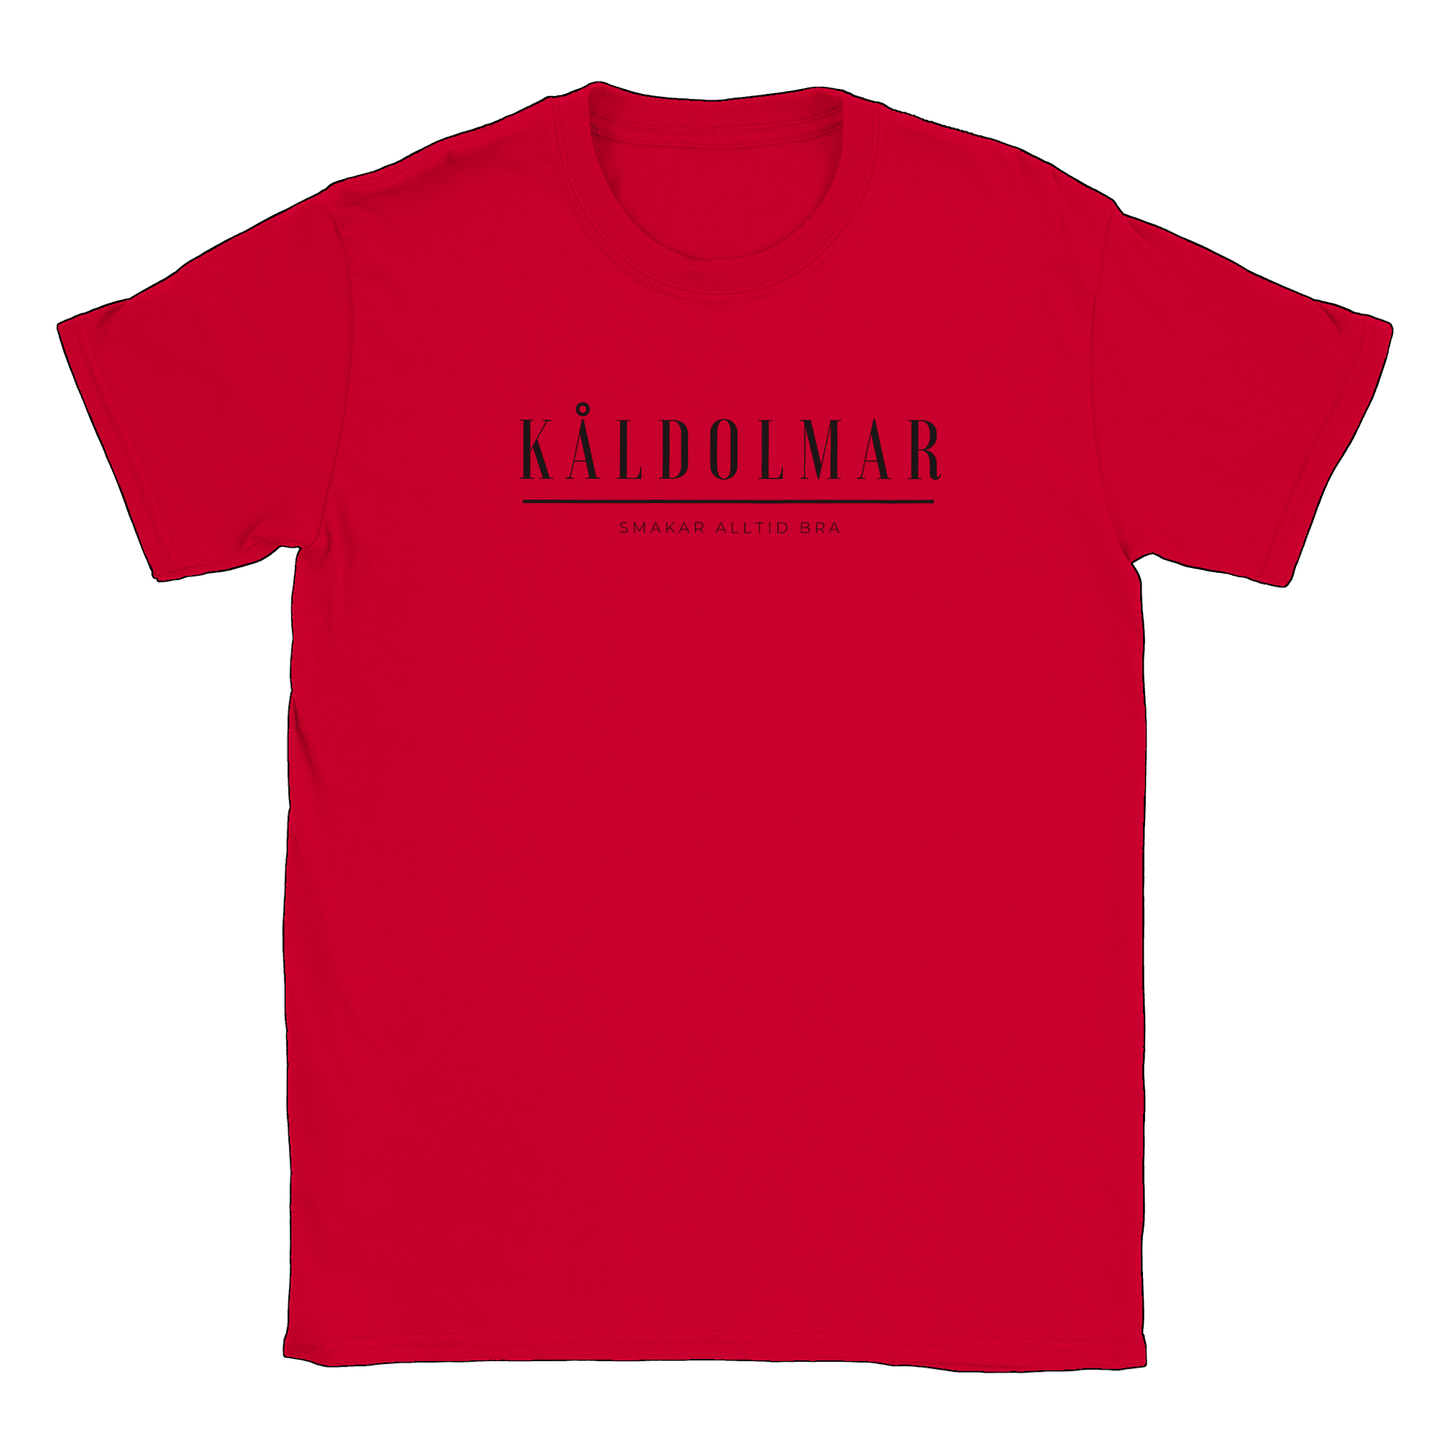 Kåldolmar - T-shirt Röd